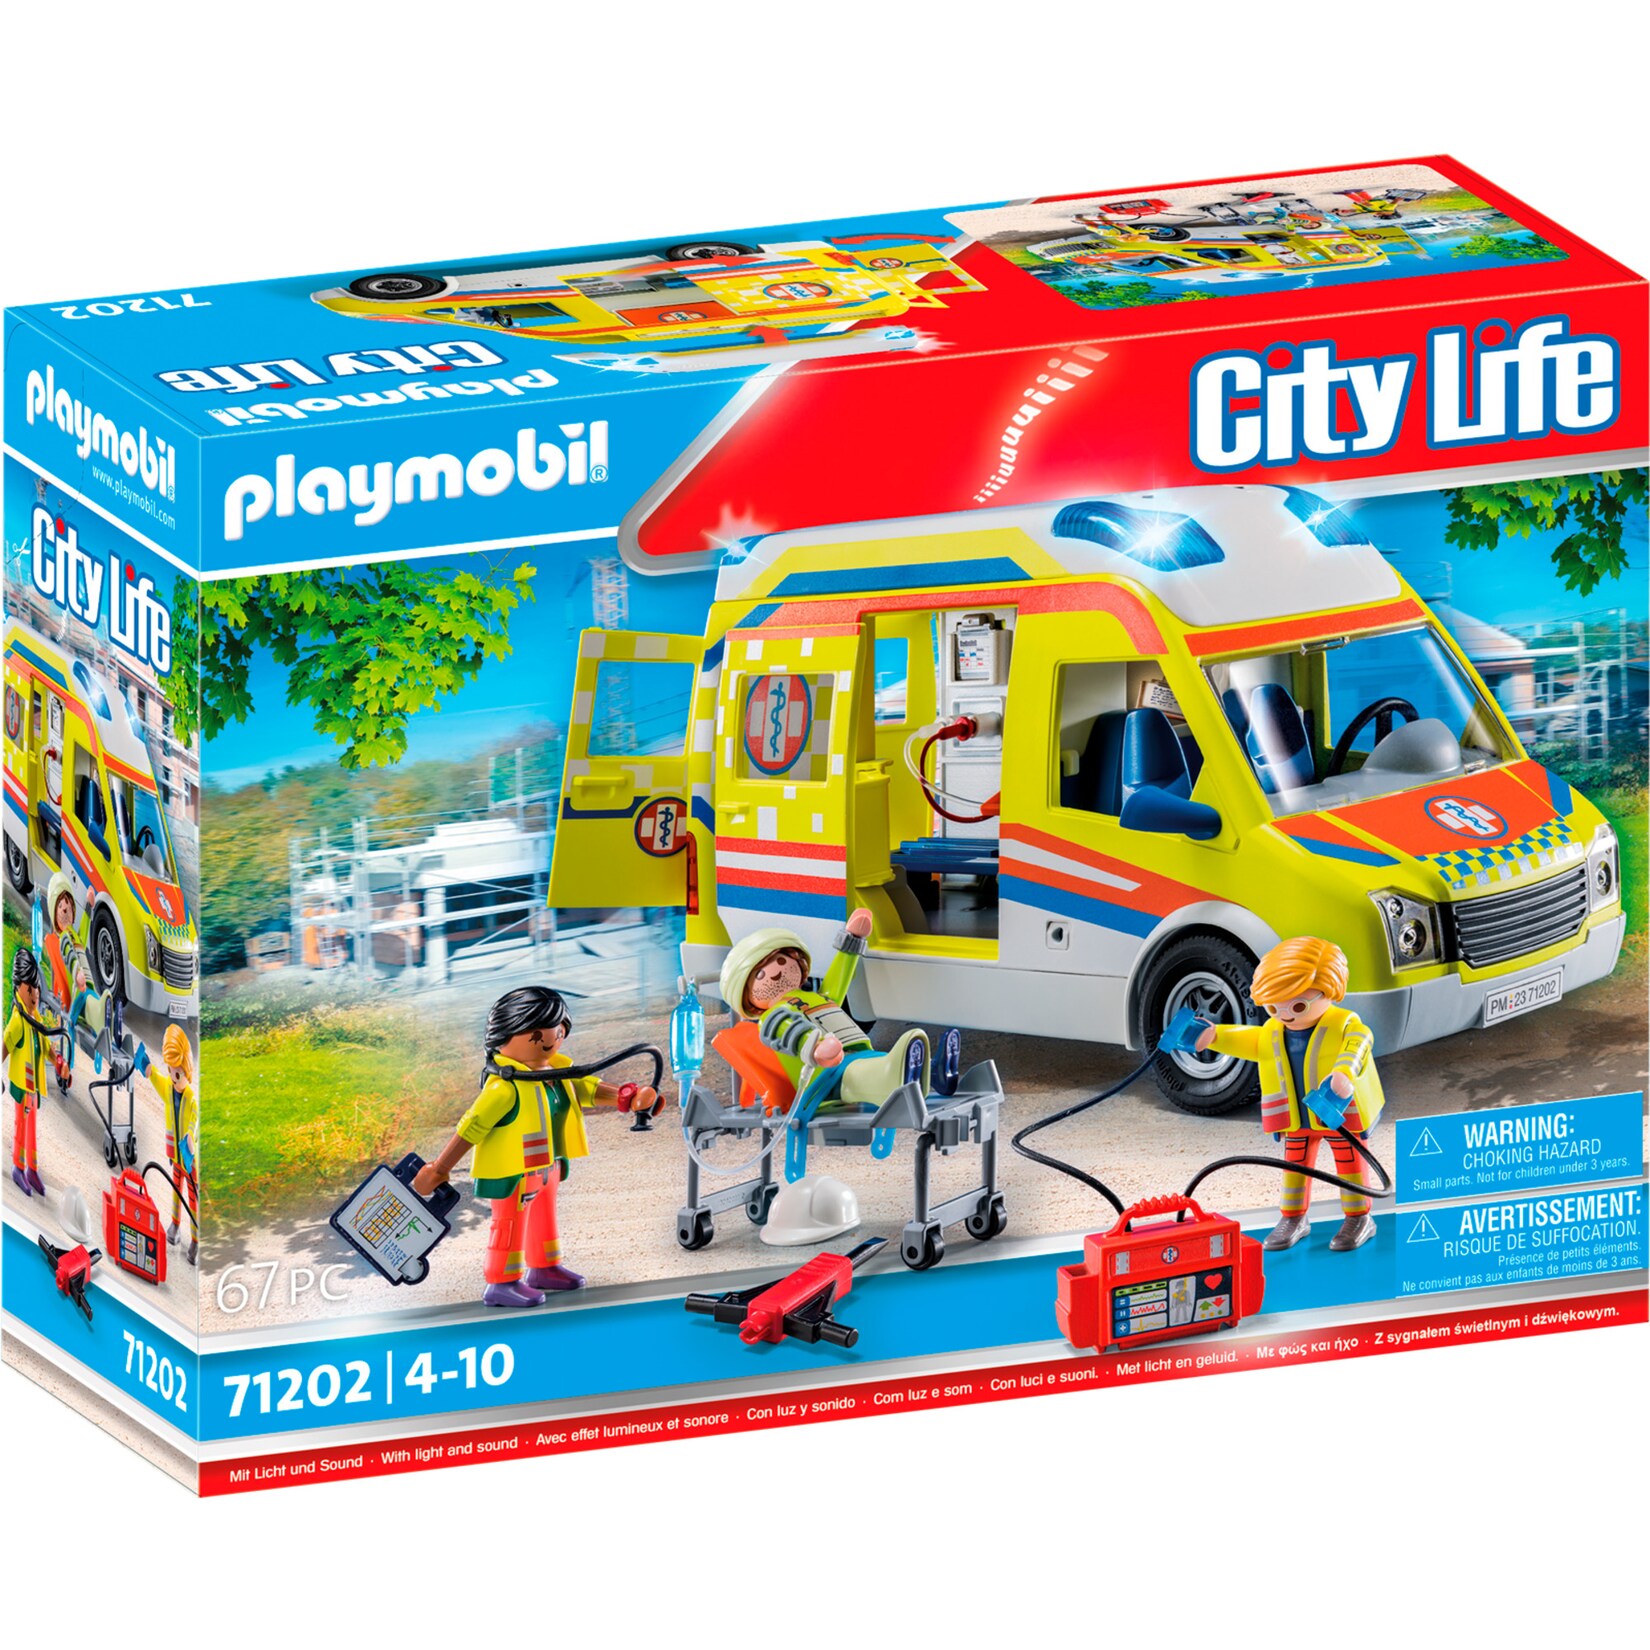 PLAYMOBIL Konstruktionsspielzeug City Life - Rettungswagen mit Licht und Sound